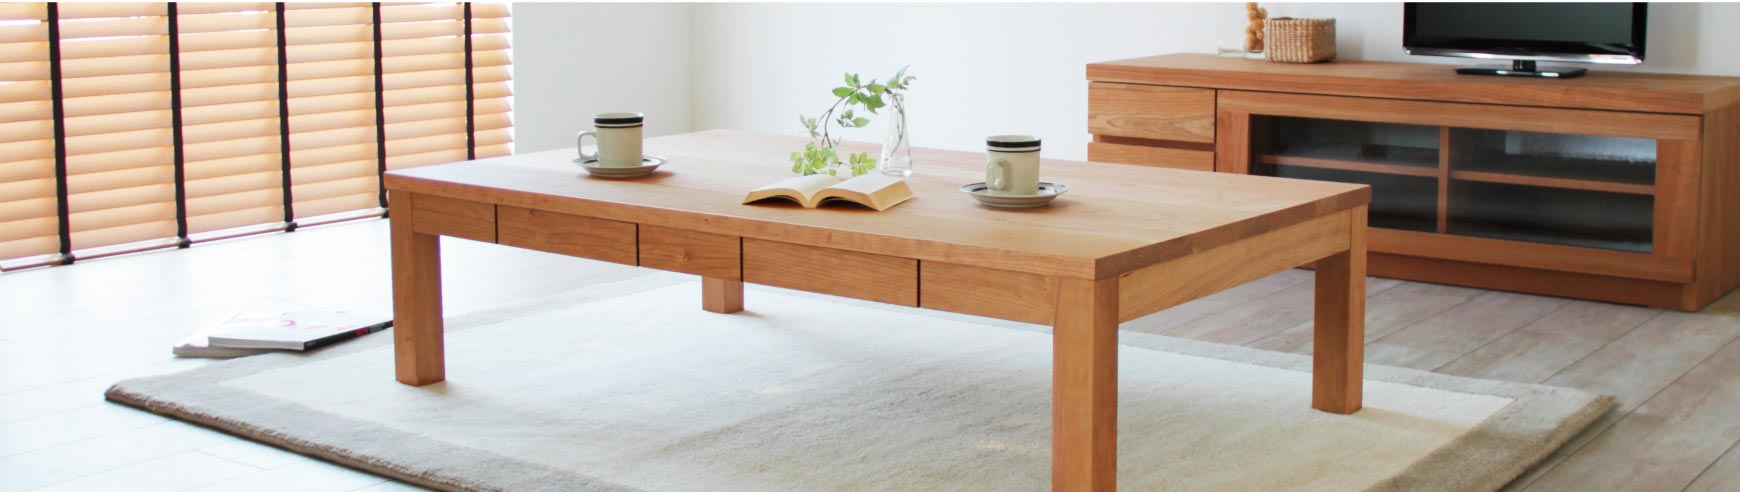 日本の職人が丁寧につくり上げる上質なリビングテーブル